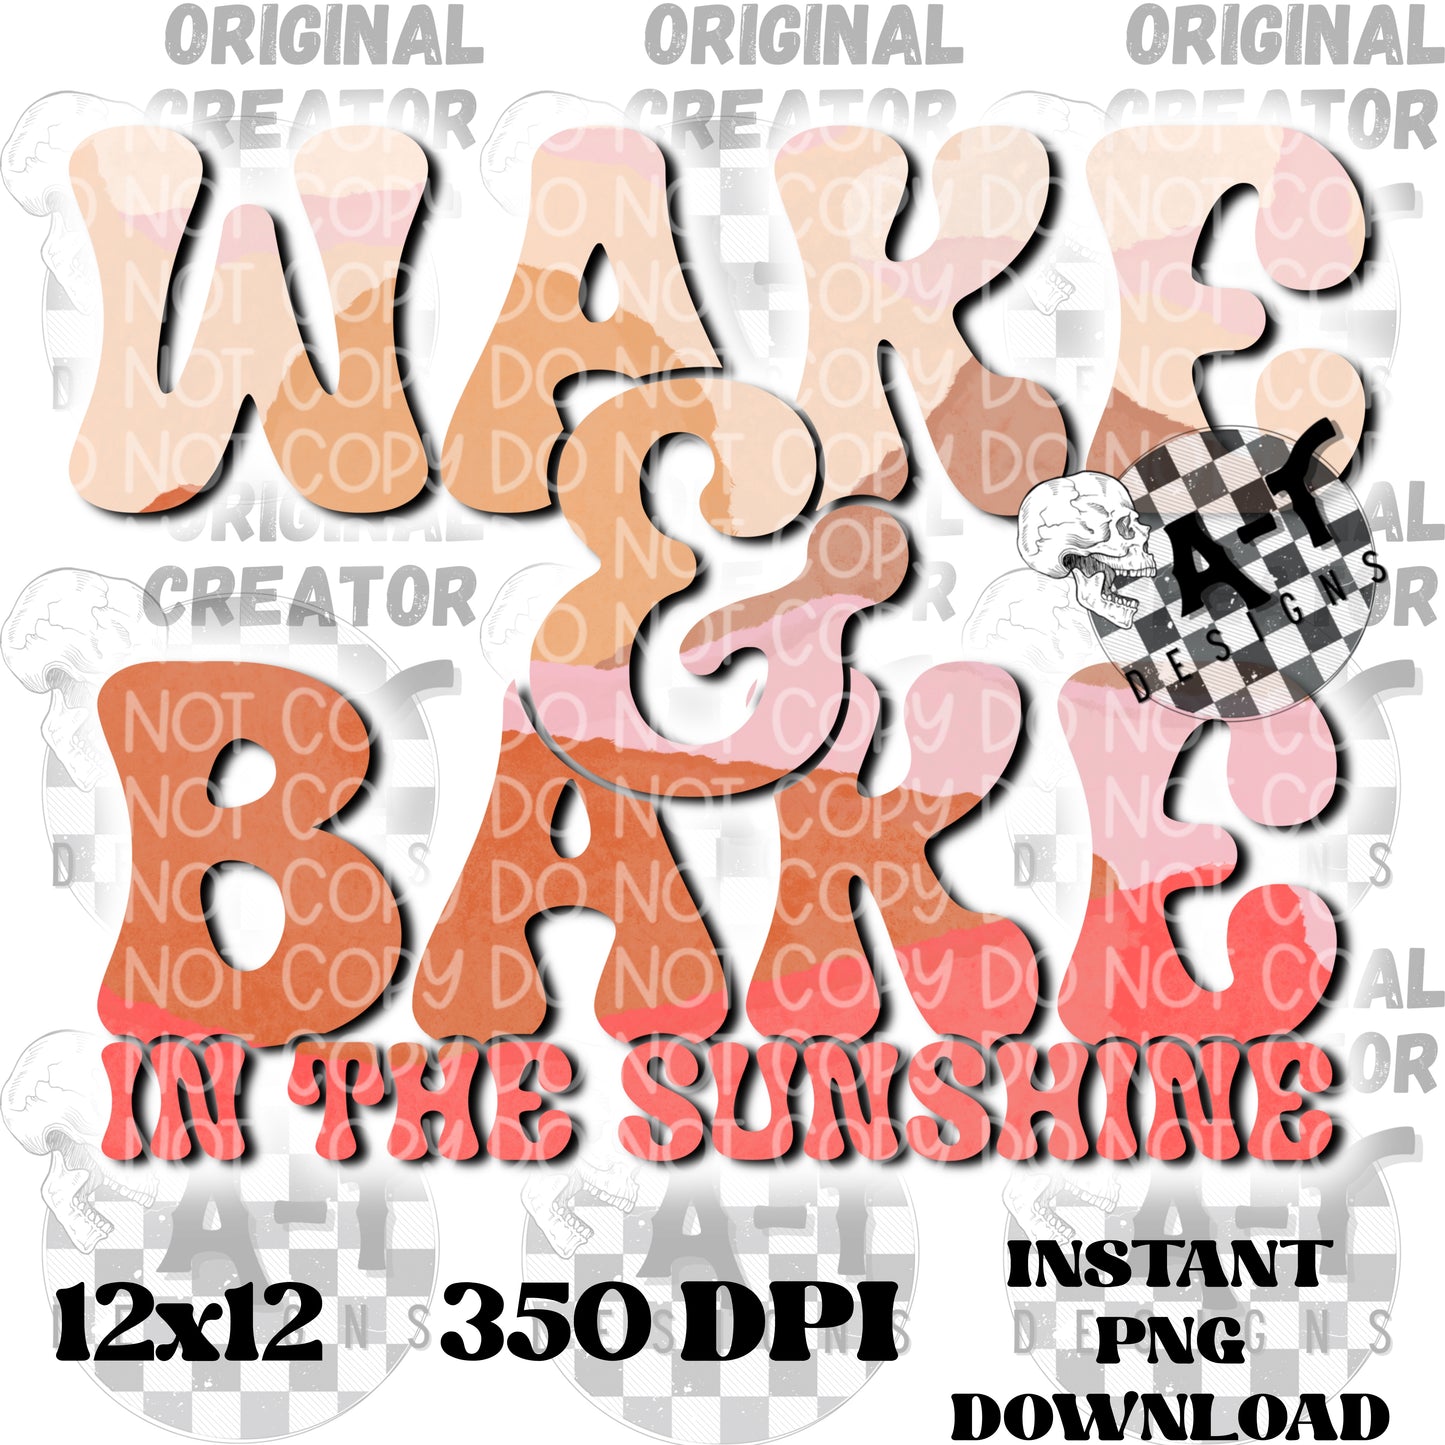 Wake & Bake in the Sunshine